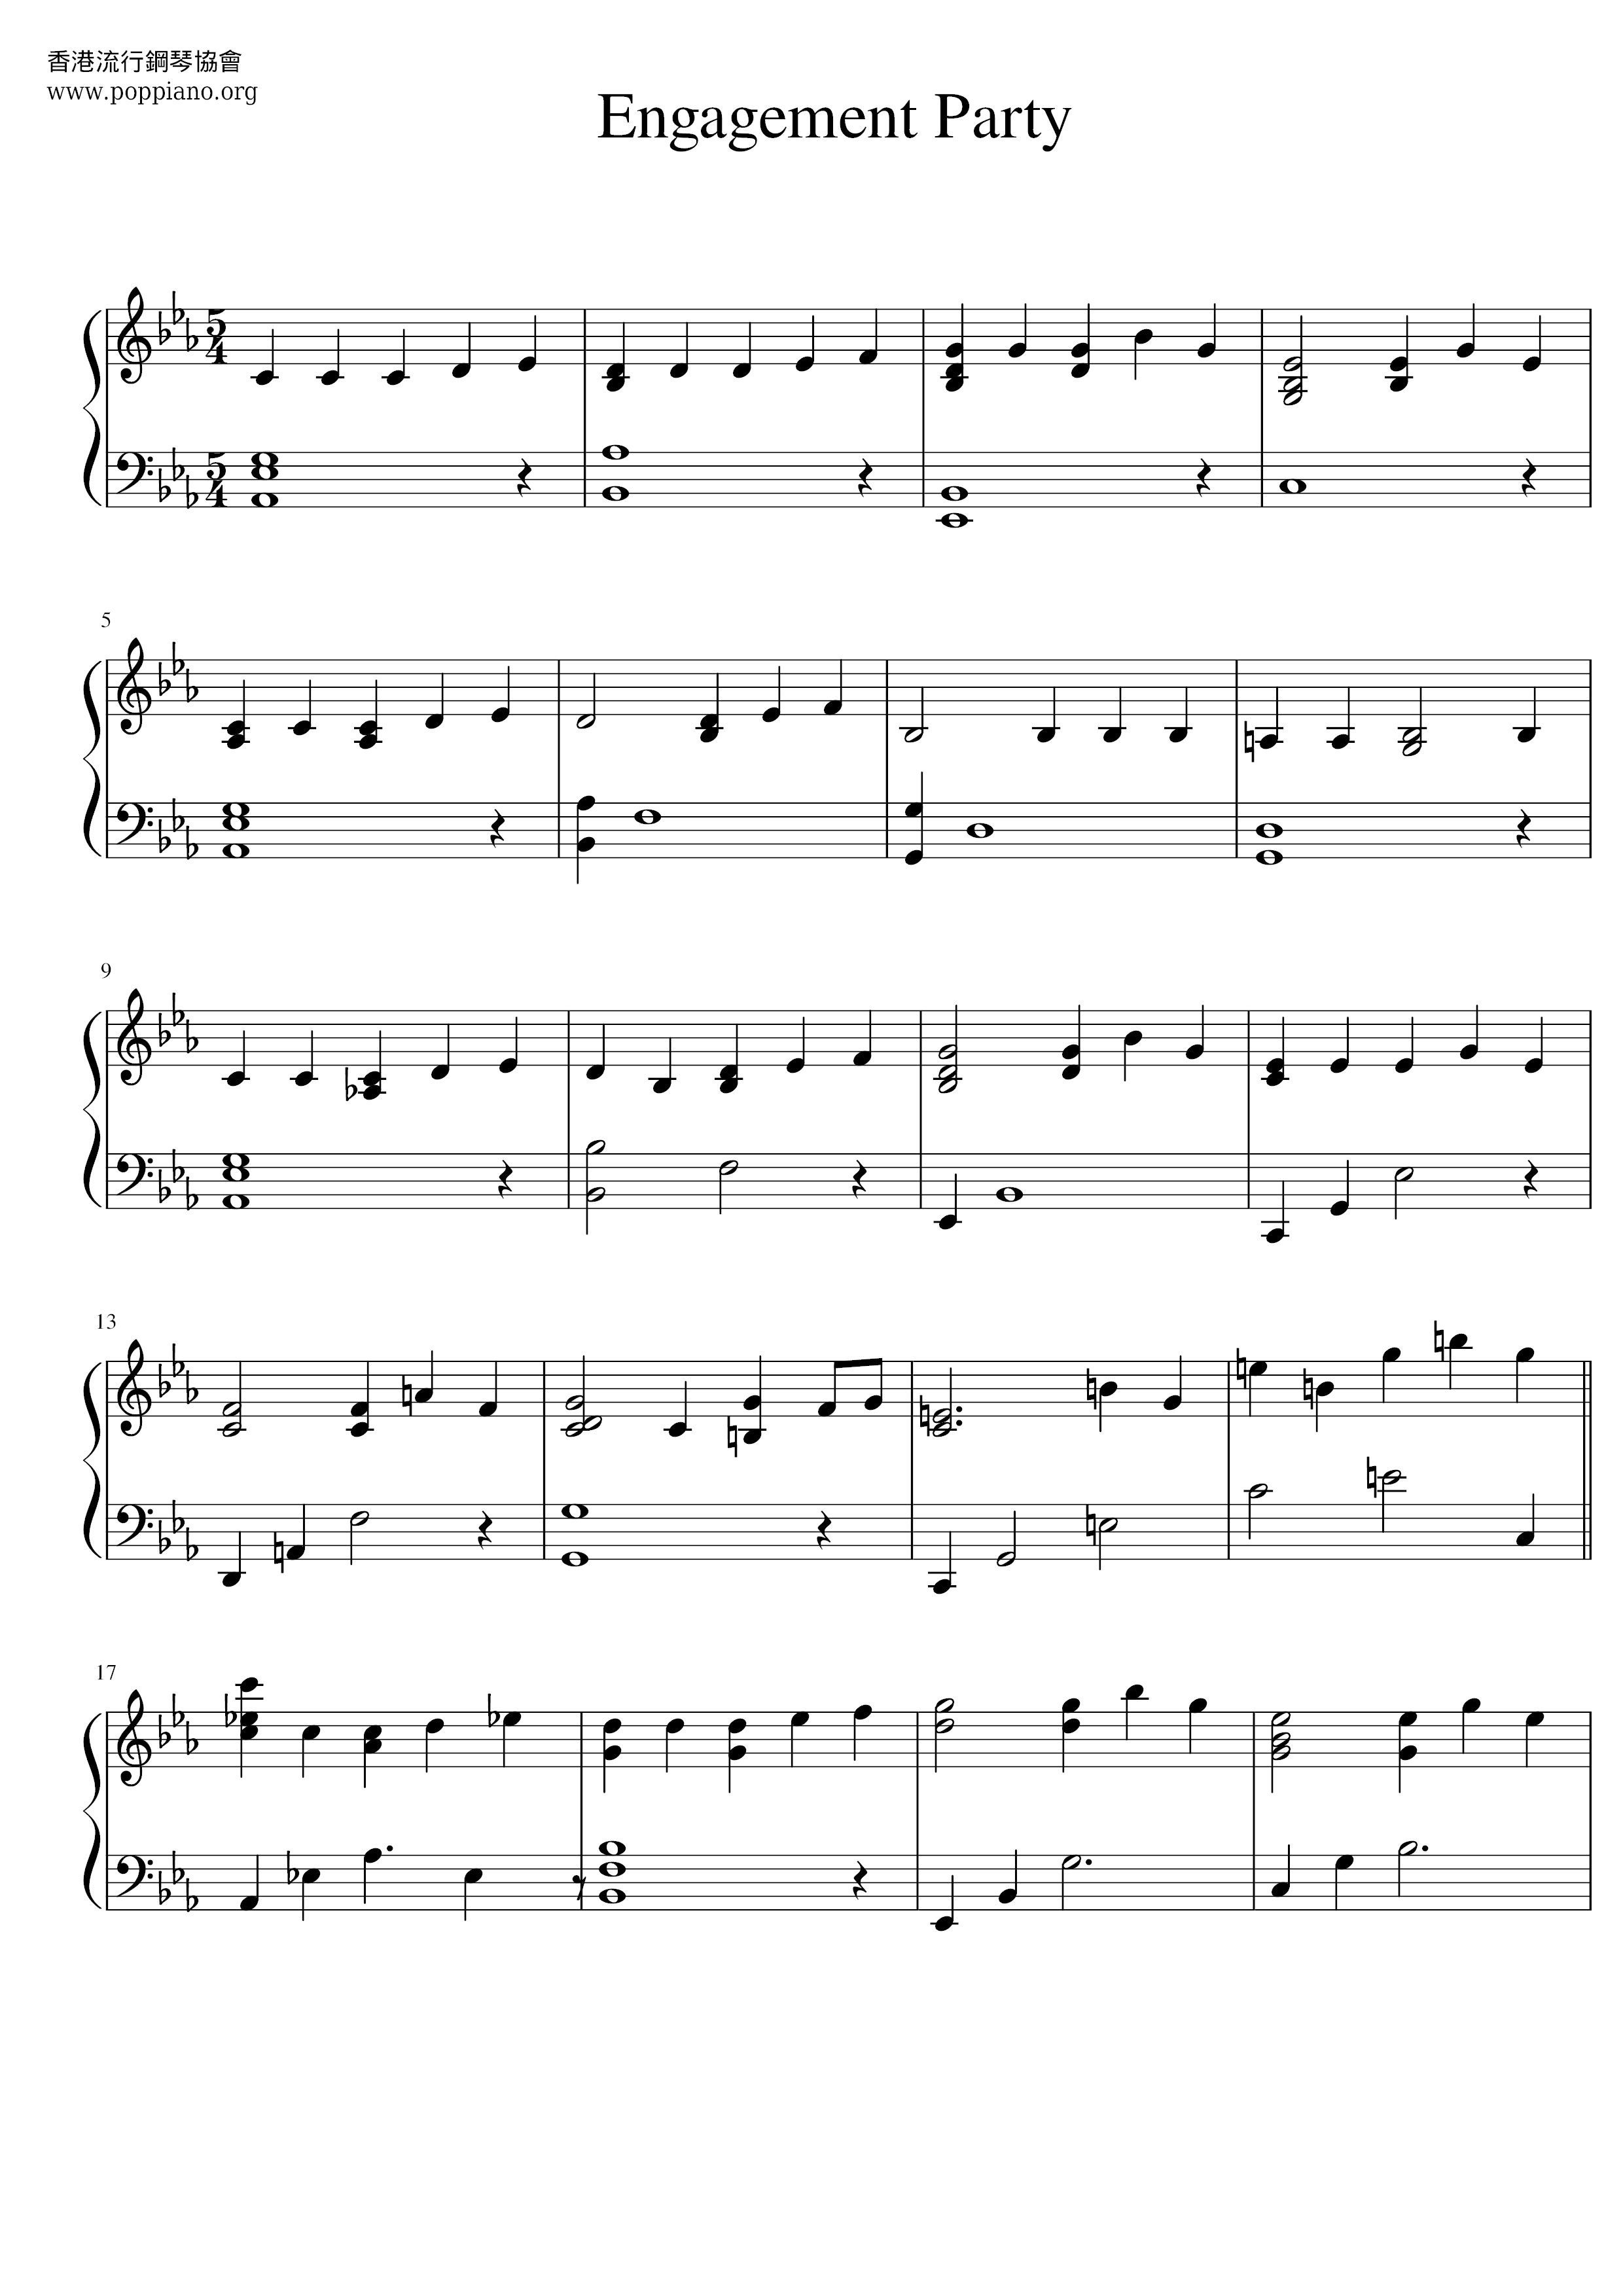 La La Land - It's Over - Engagement Party Score